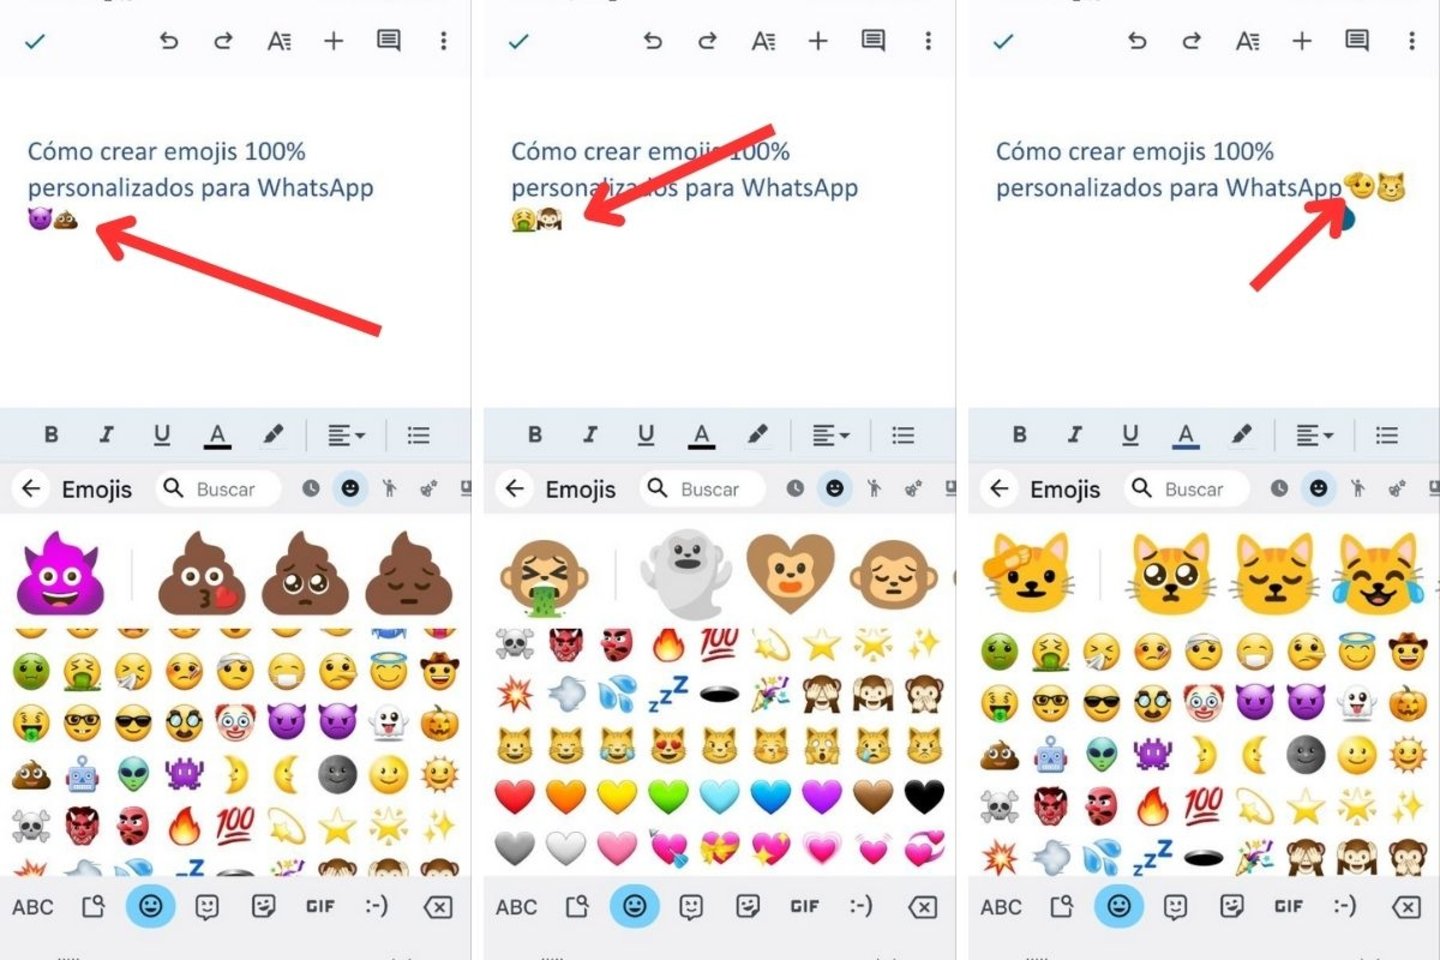 Cómo crear emojis 100% personalizados para WhatsApp